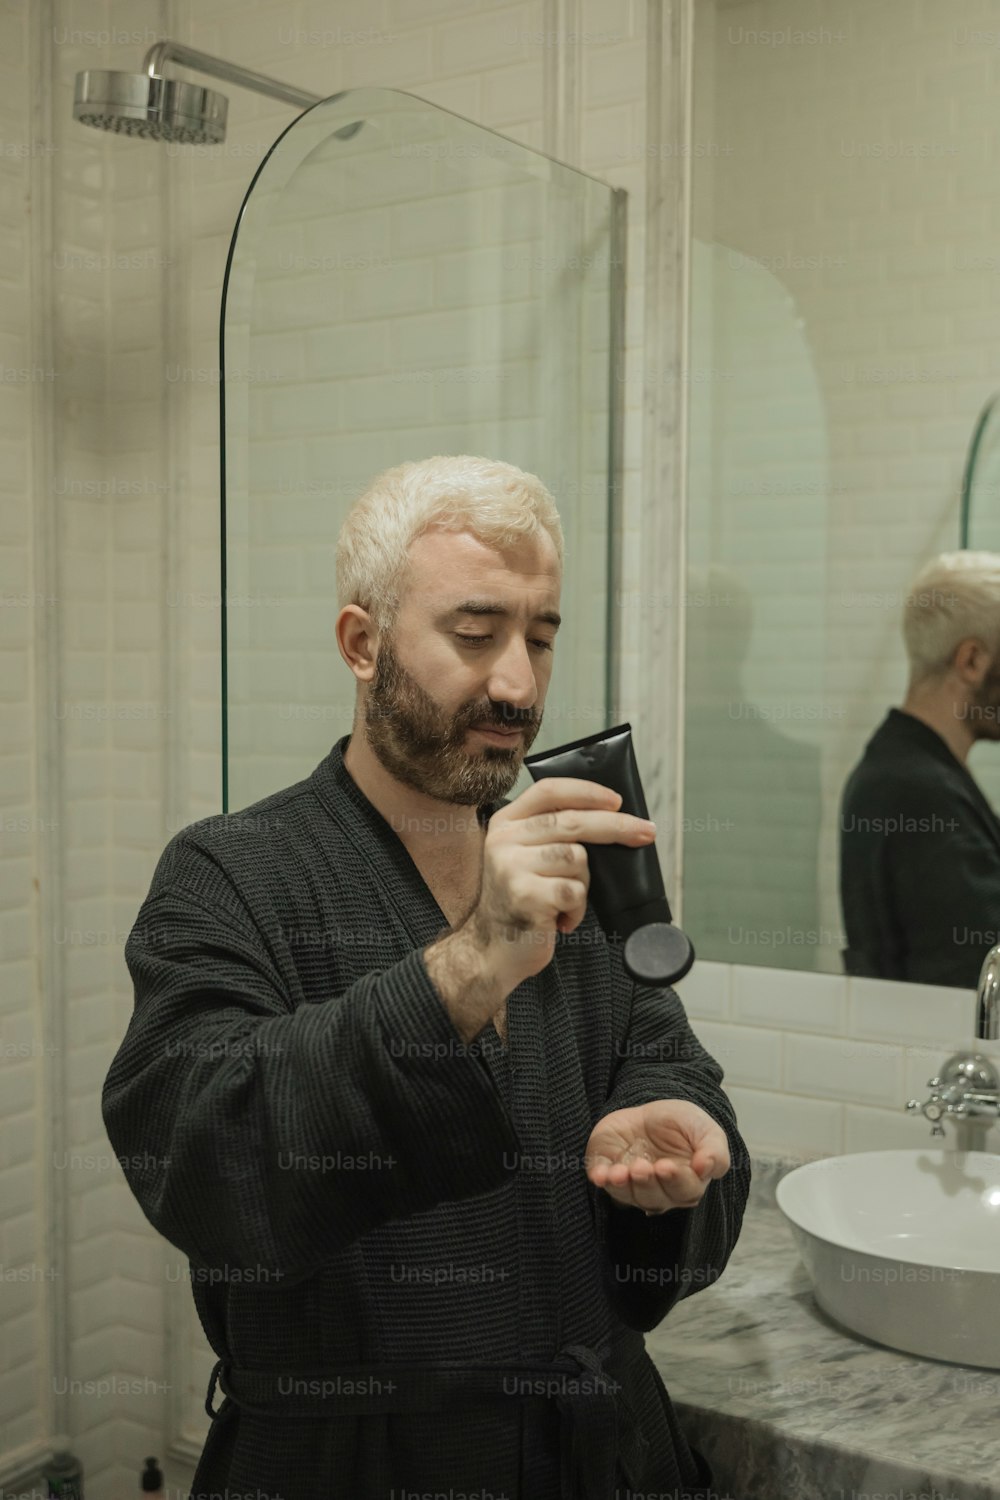 Un hombre en bata de baño afeitándose la cara frente a un espejo